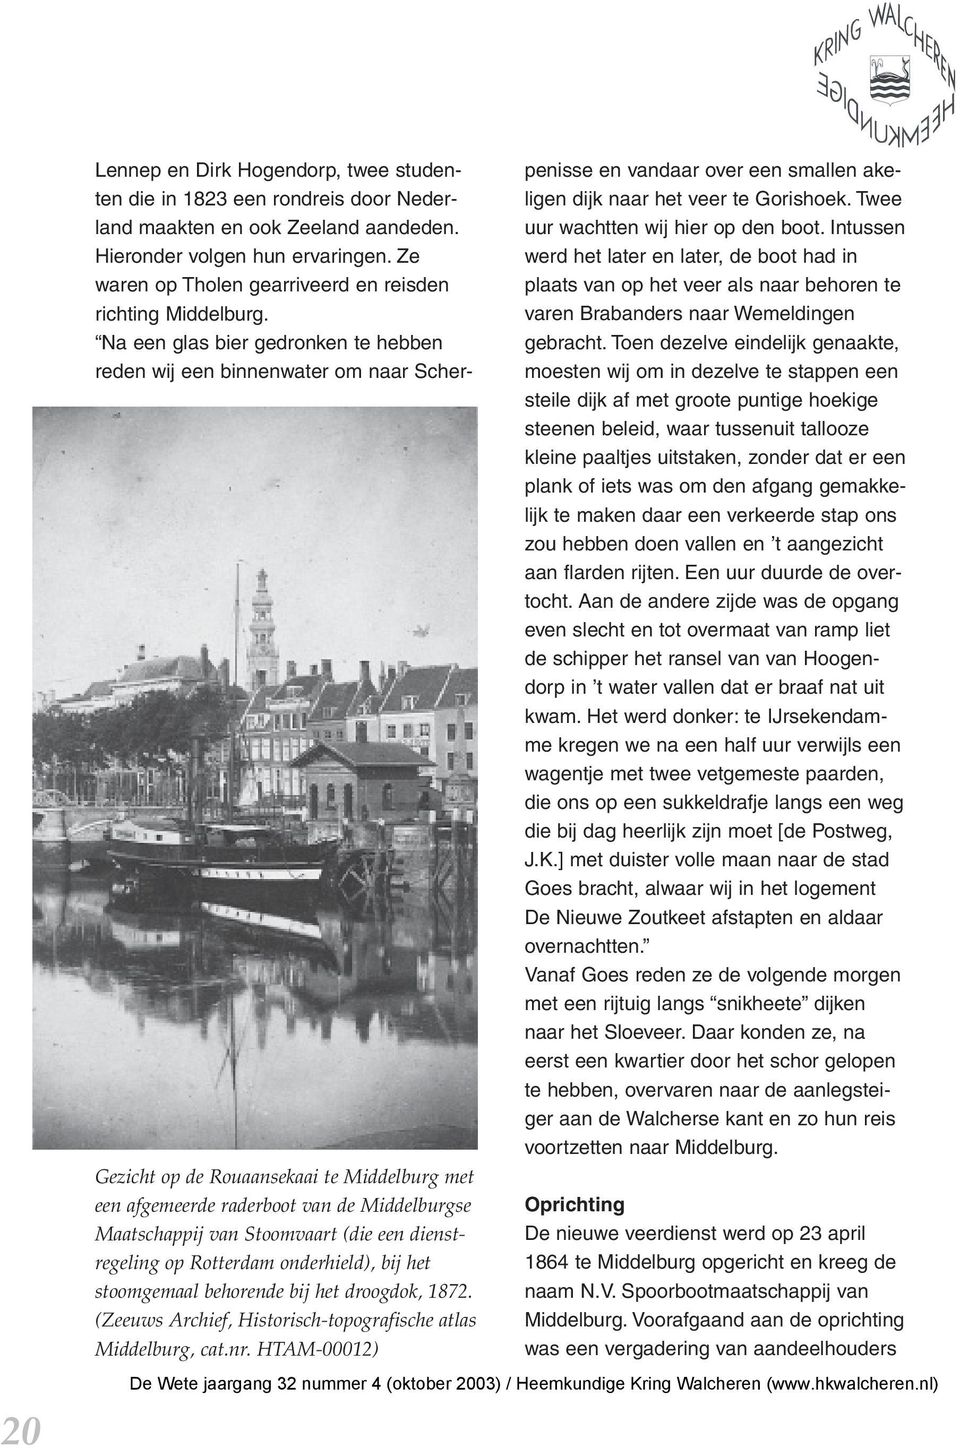 HTAM-00012) Lennep en Dirk Hogendorp, twee studenten die in 1823 een rondreis door Nederland maakten en ook Zeeland aandeden. Hieronder volgen hun ervaringen.